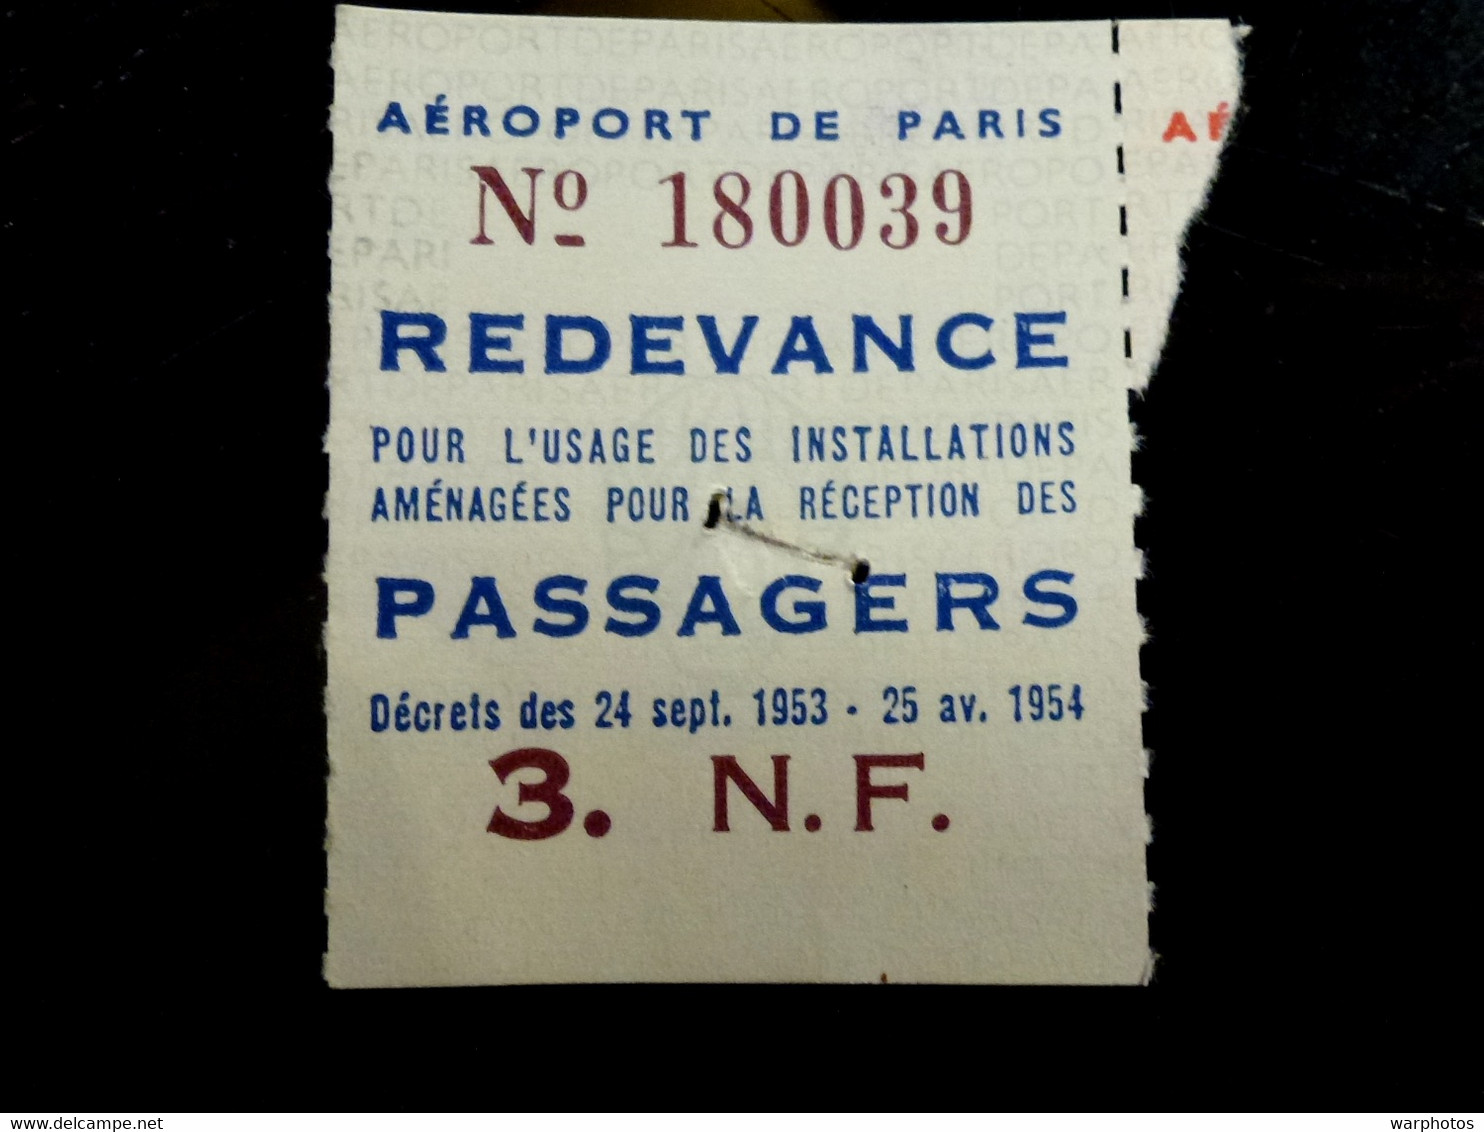 TICKET REDEVANCE 3 Nouveaux Francs _ AEROPORT De PARIS _ REDEVANCE - Tickets